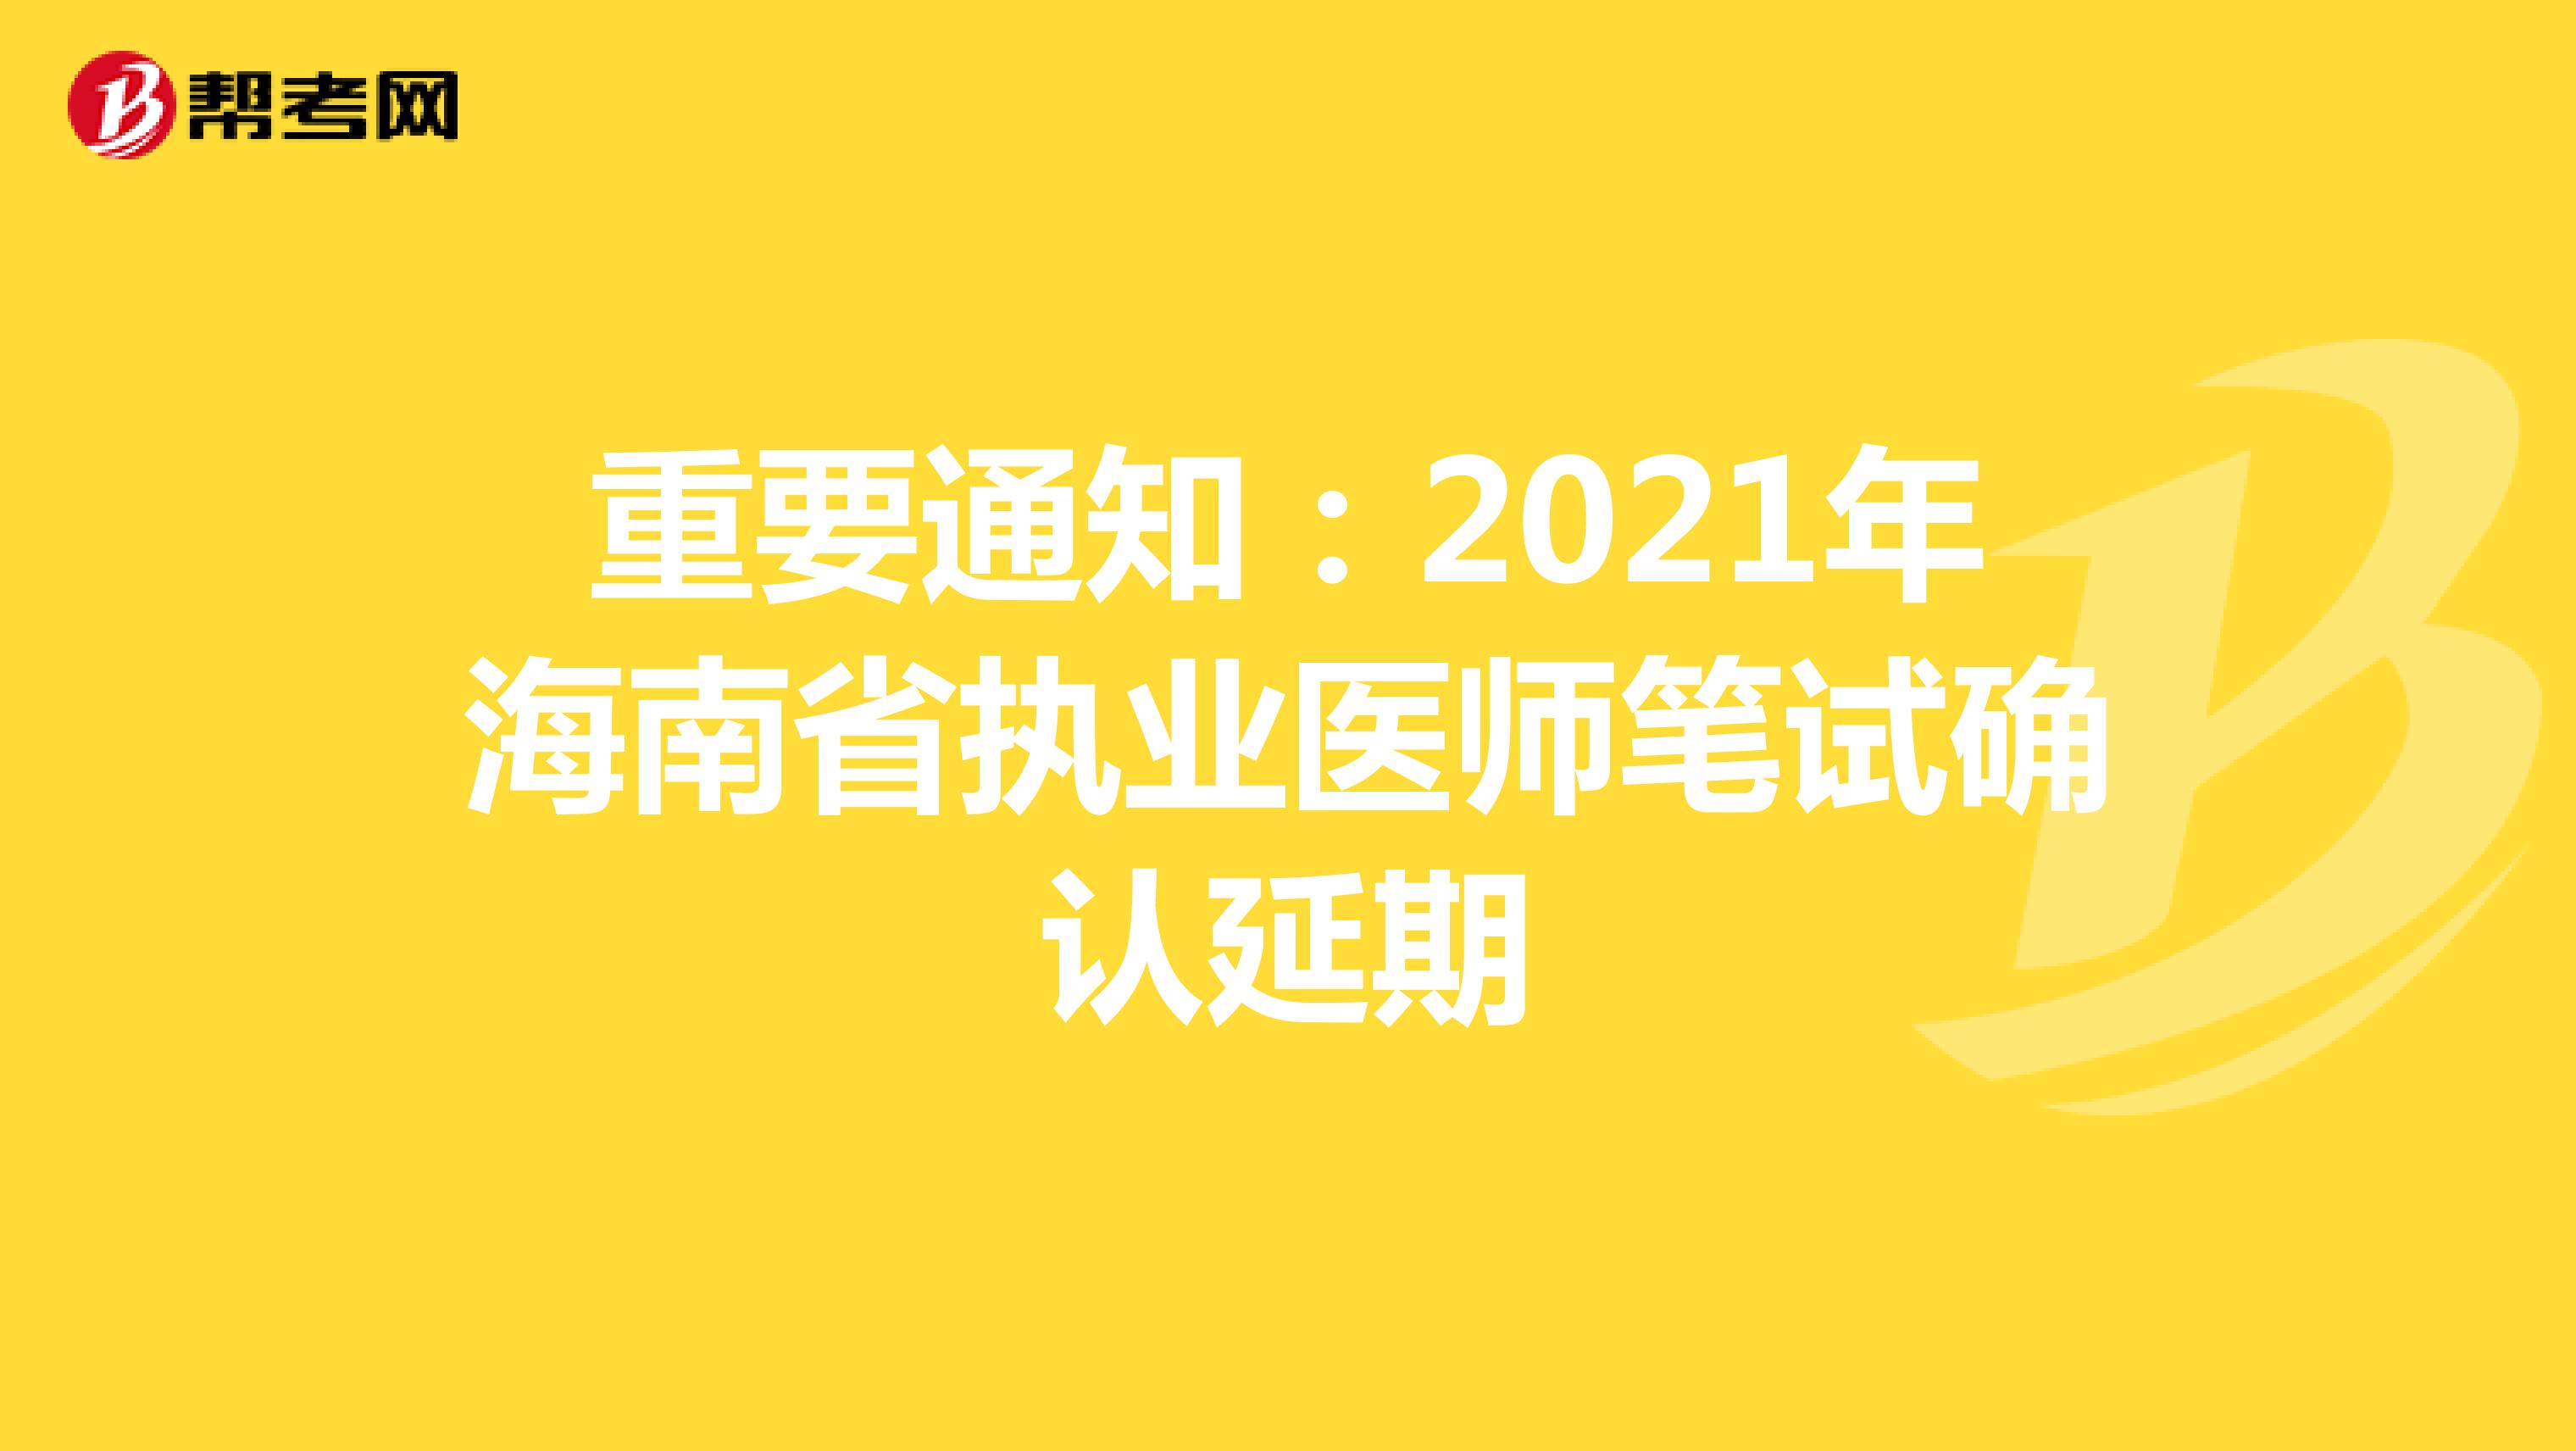 重要通知：2021年海南省执业医师笔试确认延期